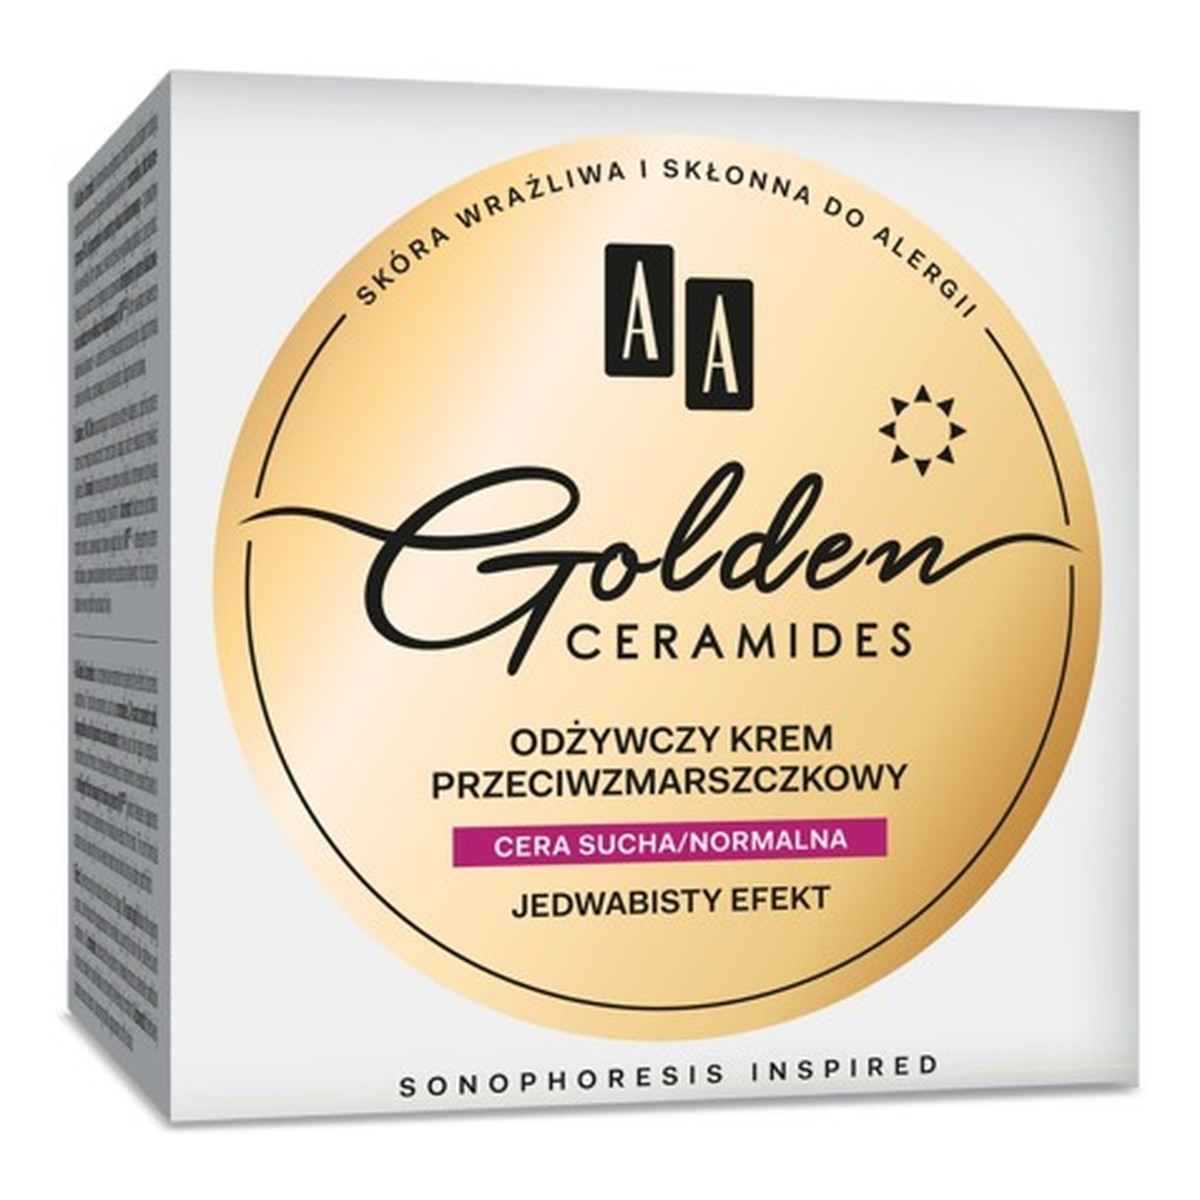 AA Golden Ceramides Odżywczy Krem przeciwzmarszczkowy na dzień - cera sucha i normalna 50ml